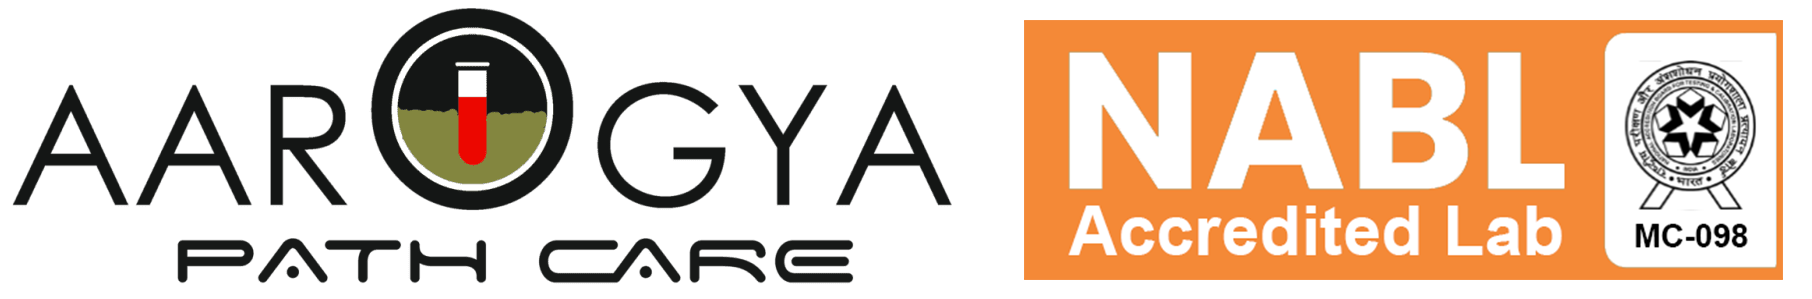 aarogya logo